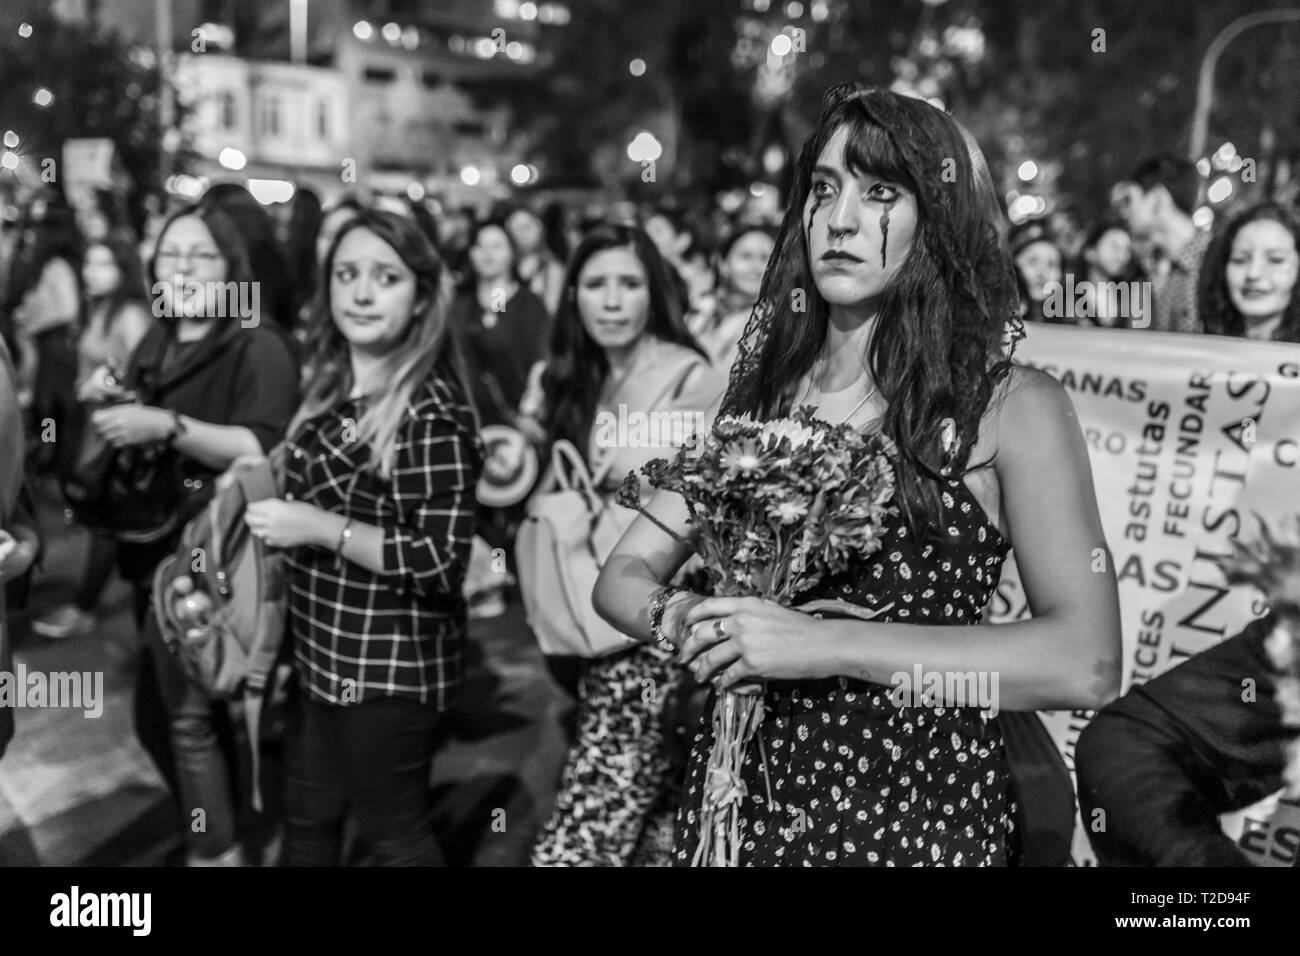 Día Internacional de la Mujer el 8 de marzo las niñas feminista tribus urbanas con traje de muerte de ropa en el día de la mujer protesta en Santiago de Chile, calle del centro de la ciudad Foto de stock